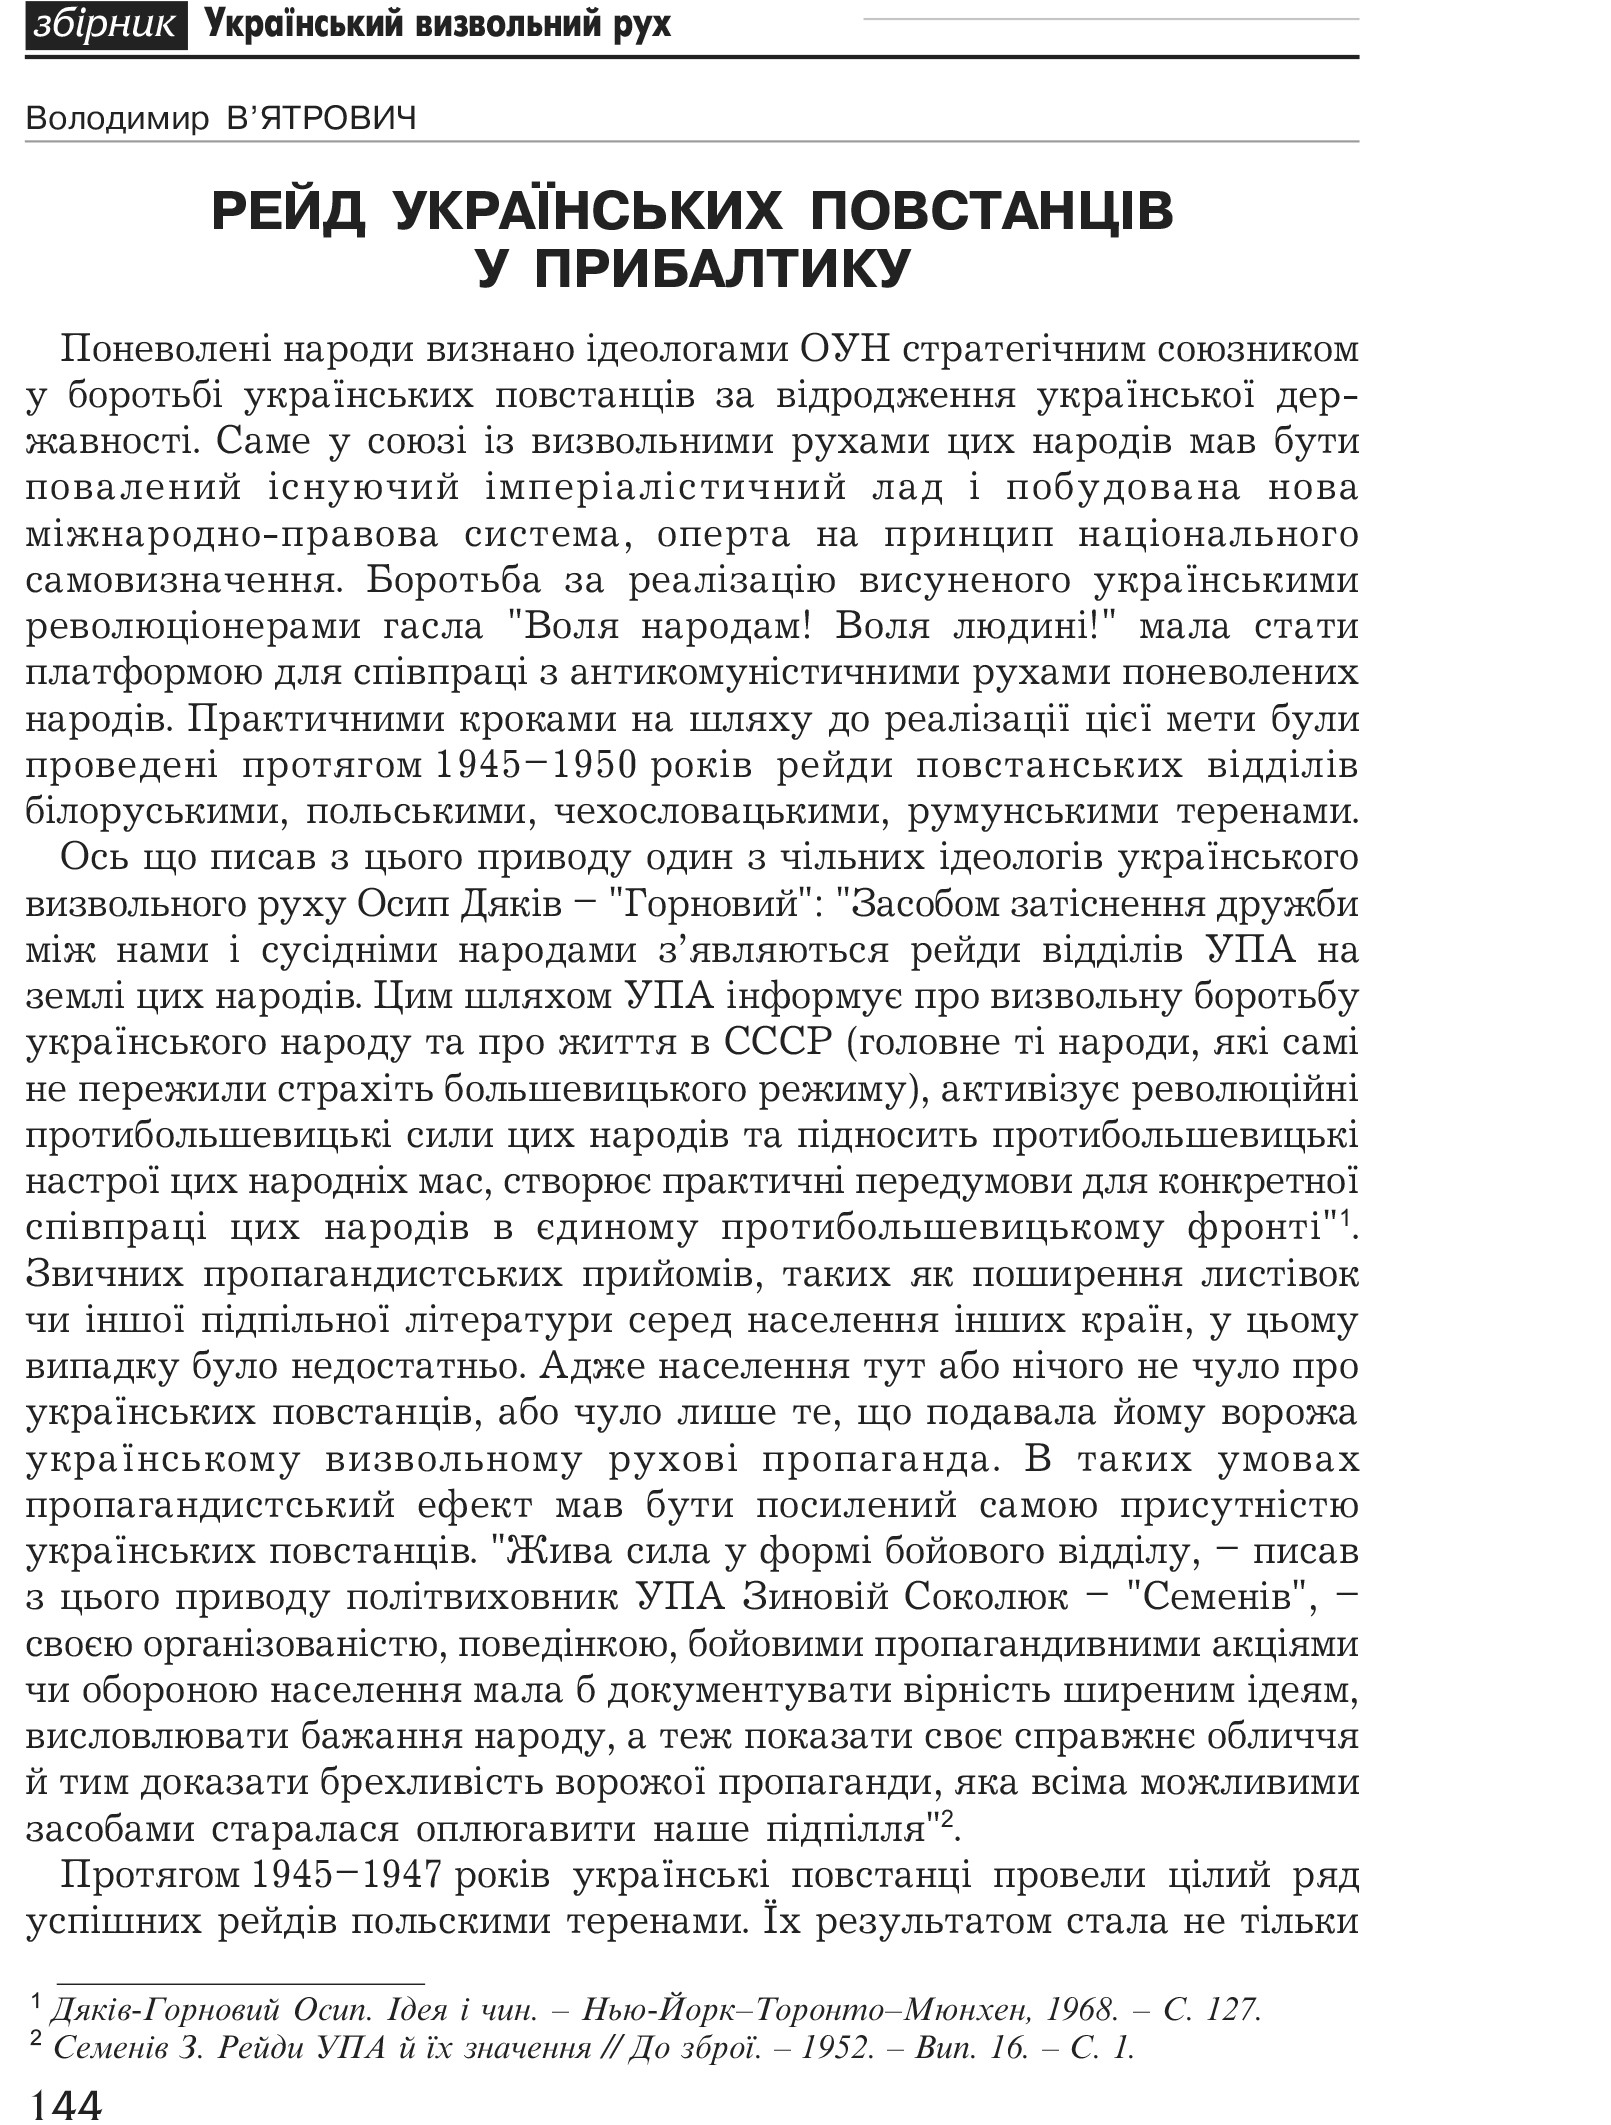 Український визвольний рух №1, ст. 144 - 150